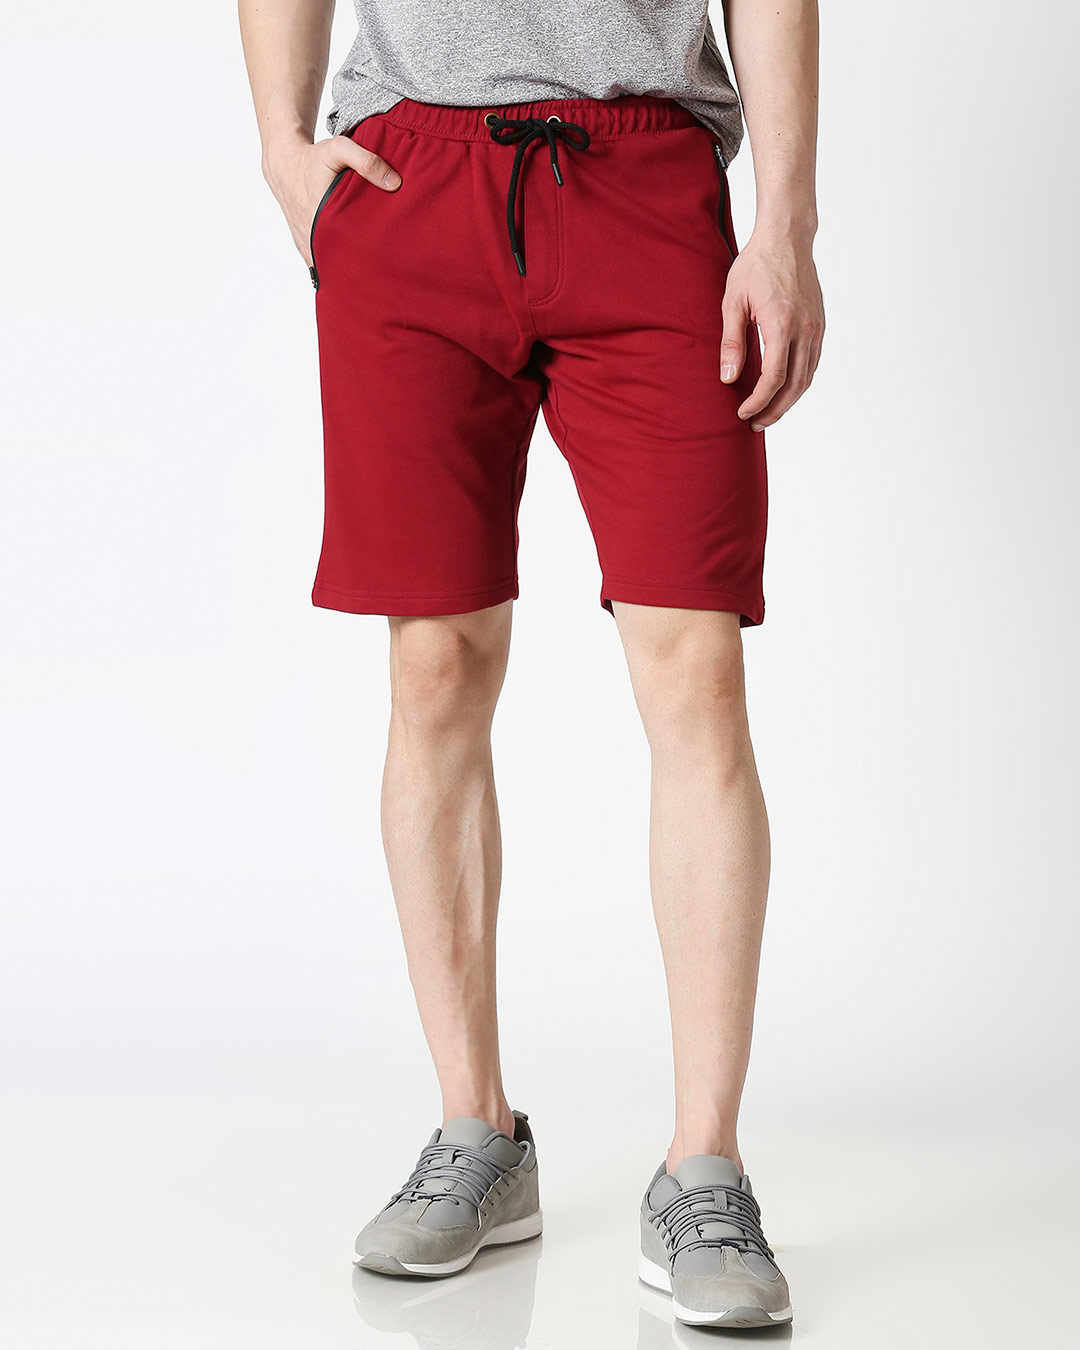 Buy Dark Maroon Zipper Shorts for Men maroon Online at Bewakoof